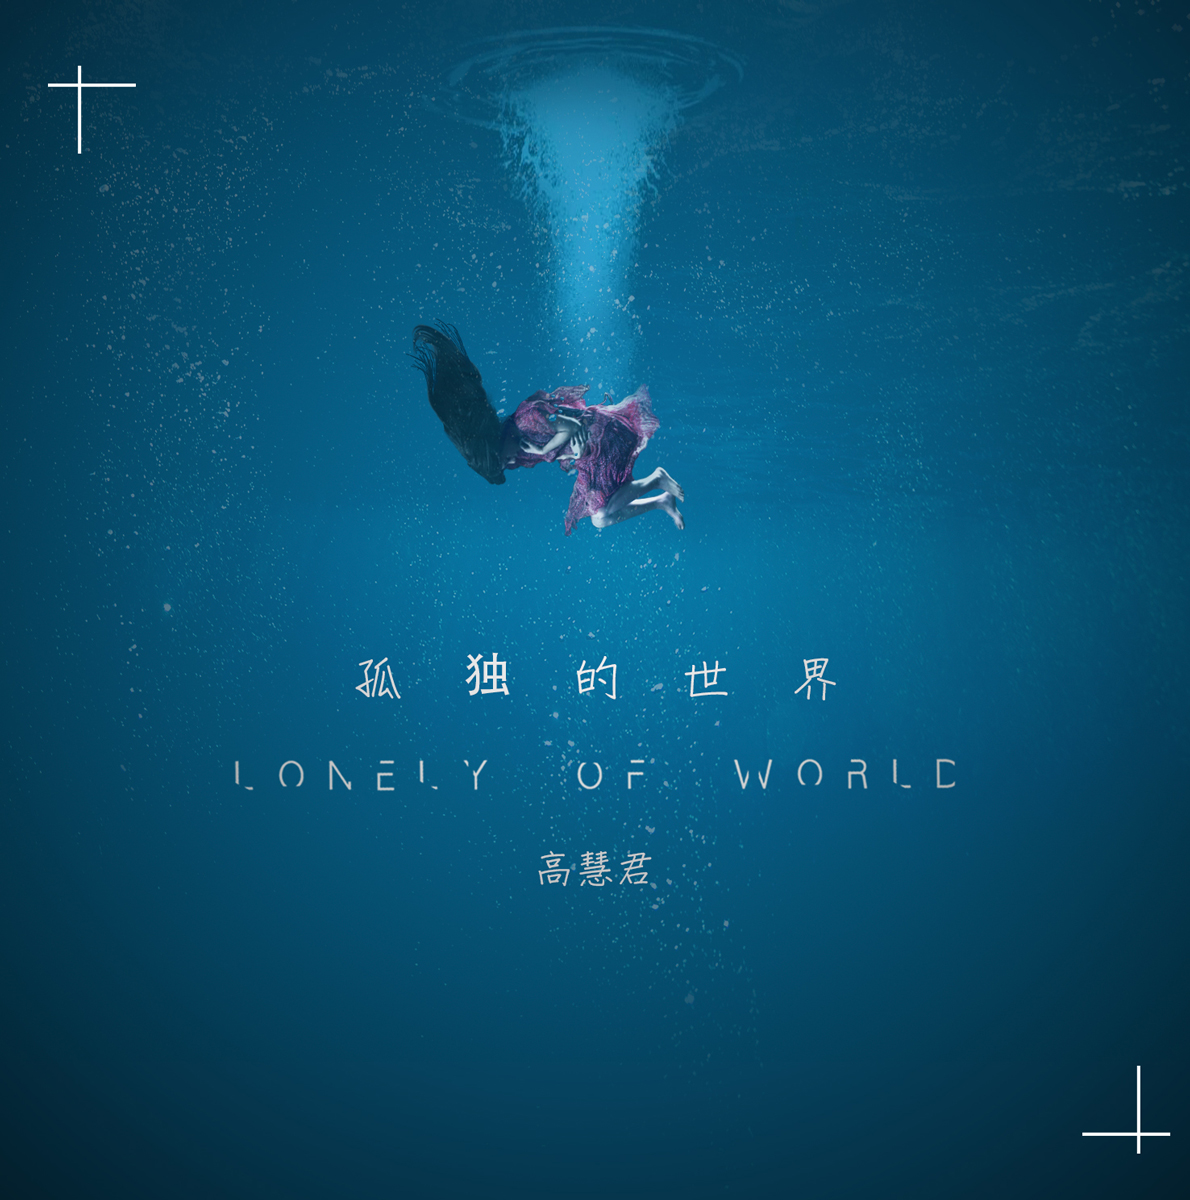 高慧君发布新单曲《孤独的世界》 清亮嗓音直击心灵